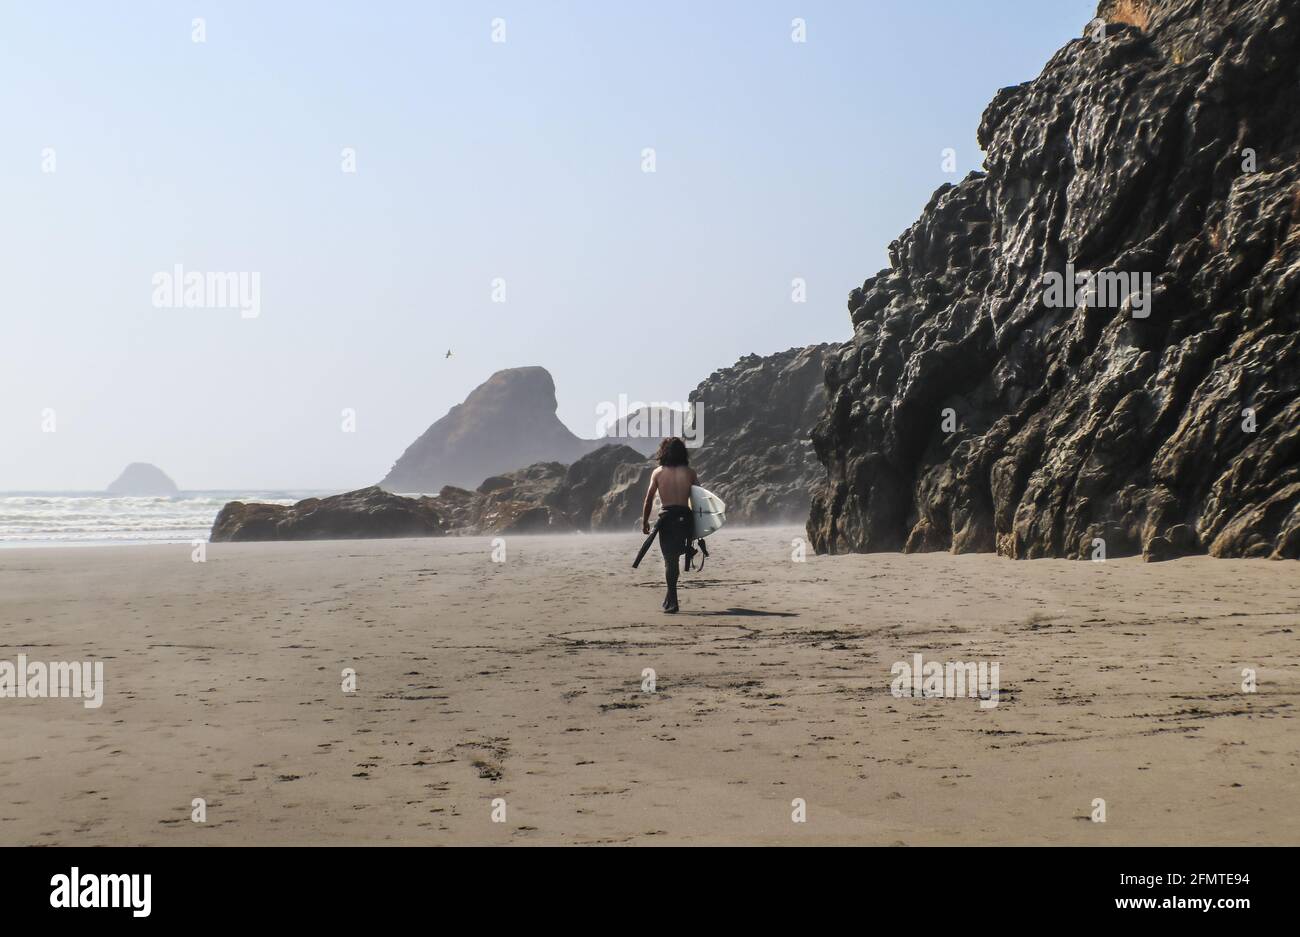 Junger Mann Surfer ohne Hemd und buschig lang dunkel Haare laufen über einen nebligen Strand mit hoch aufragenden, feuchten Felsklippen In Richtung Ozean mit Wellen Rollen in - Shad Stockfoto